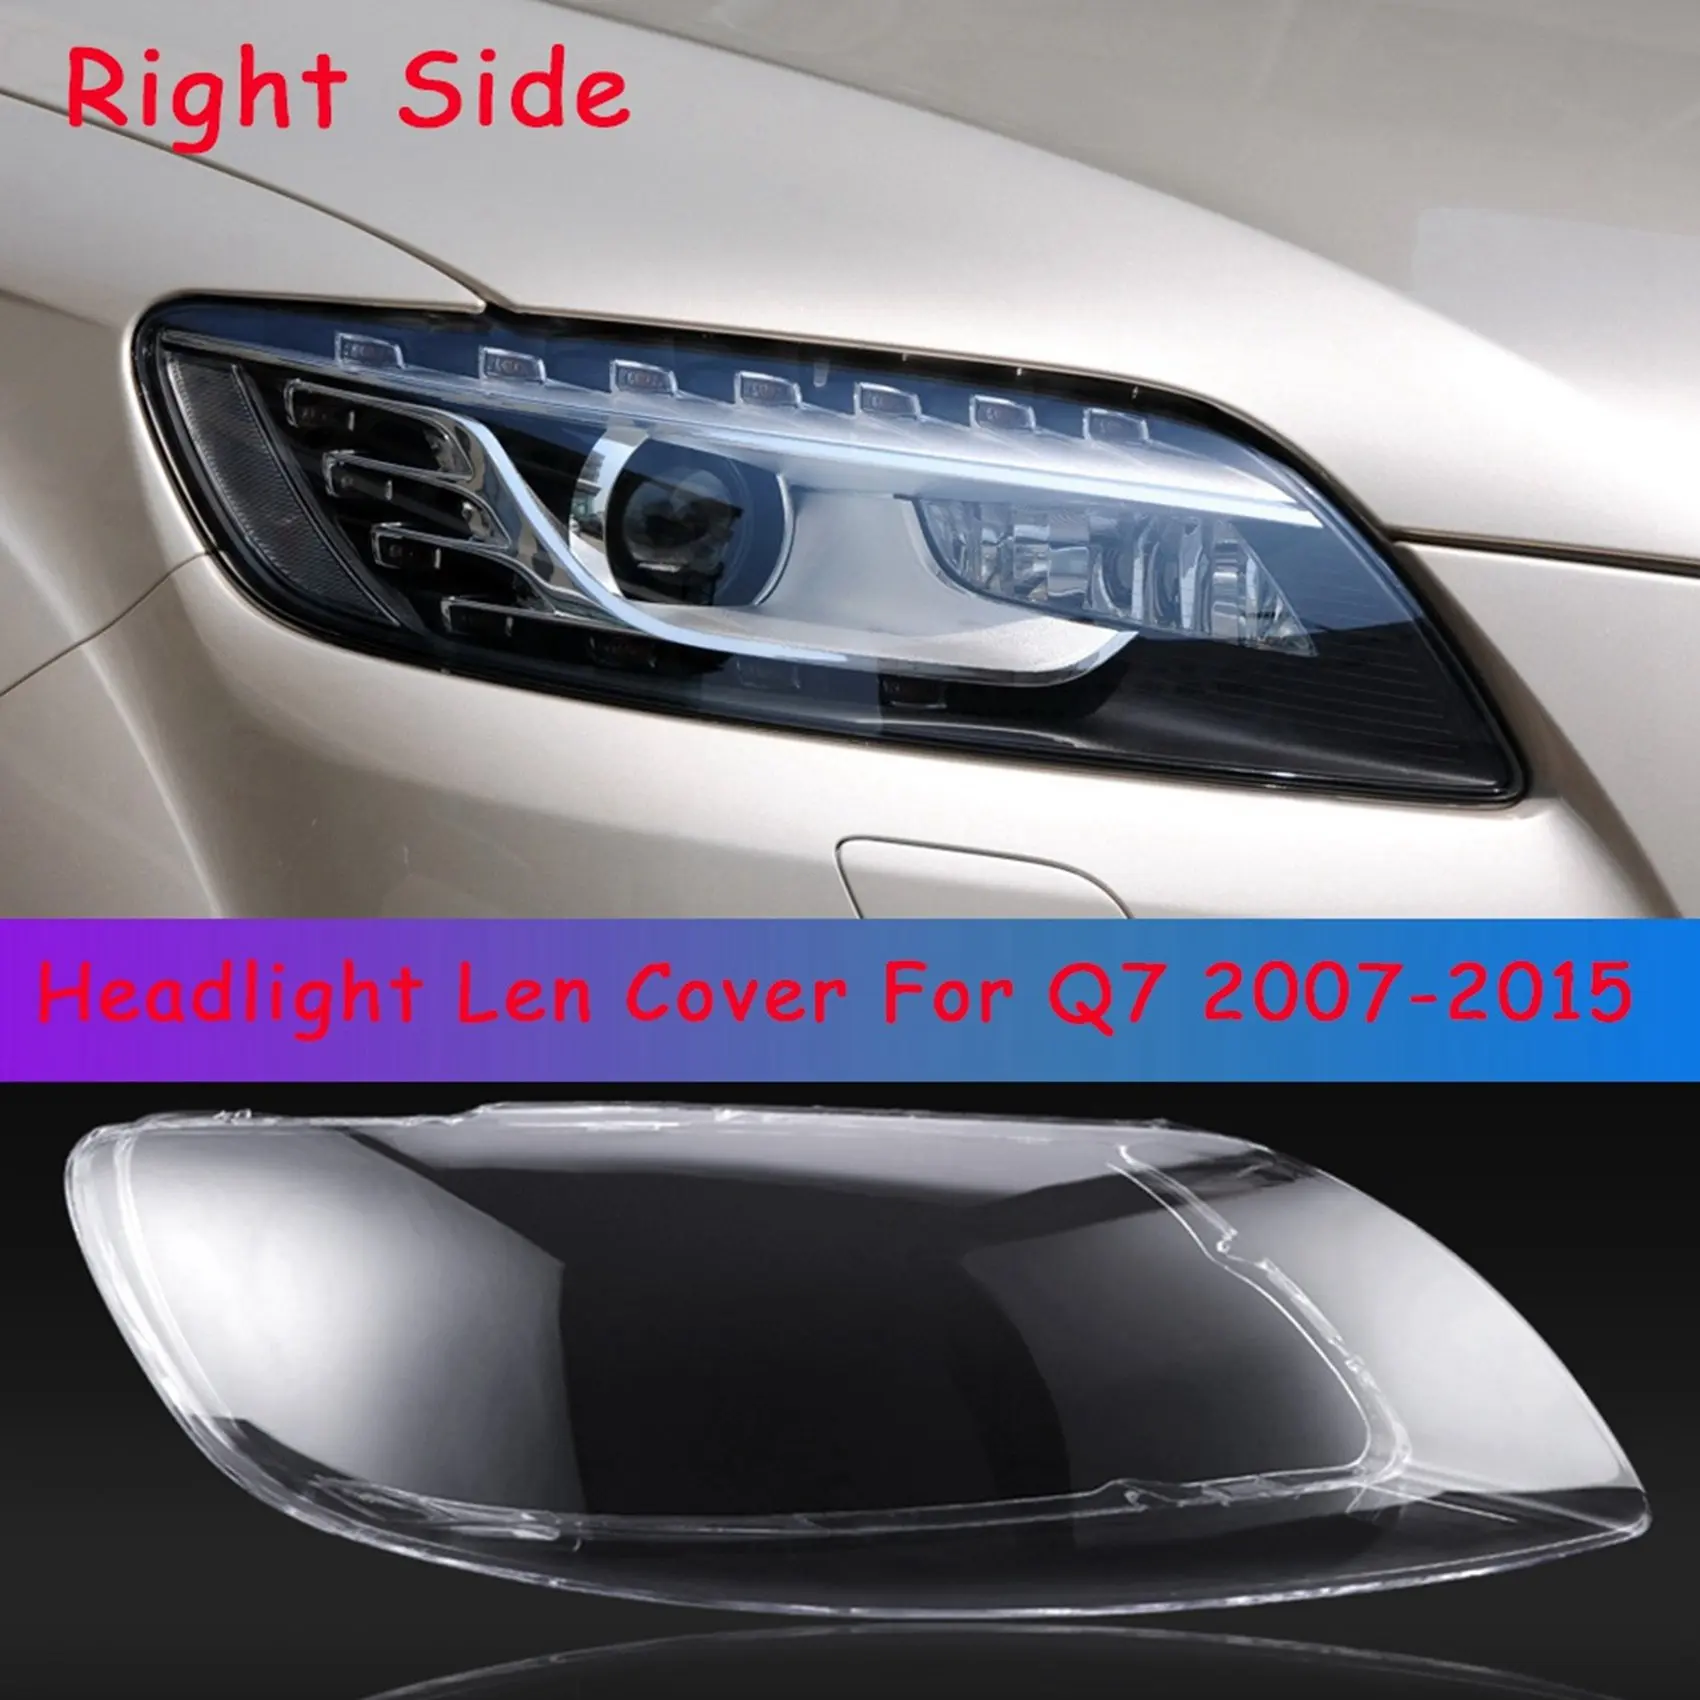 Крышка правой фары автомобиля, корпус объектива фары, корпус переднего автосветильника на 2007-2015 годы Изображение 1